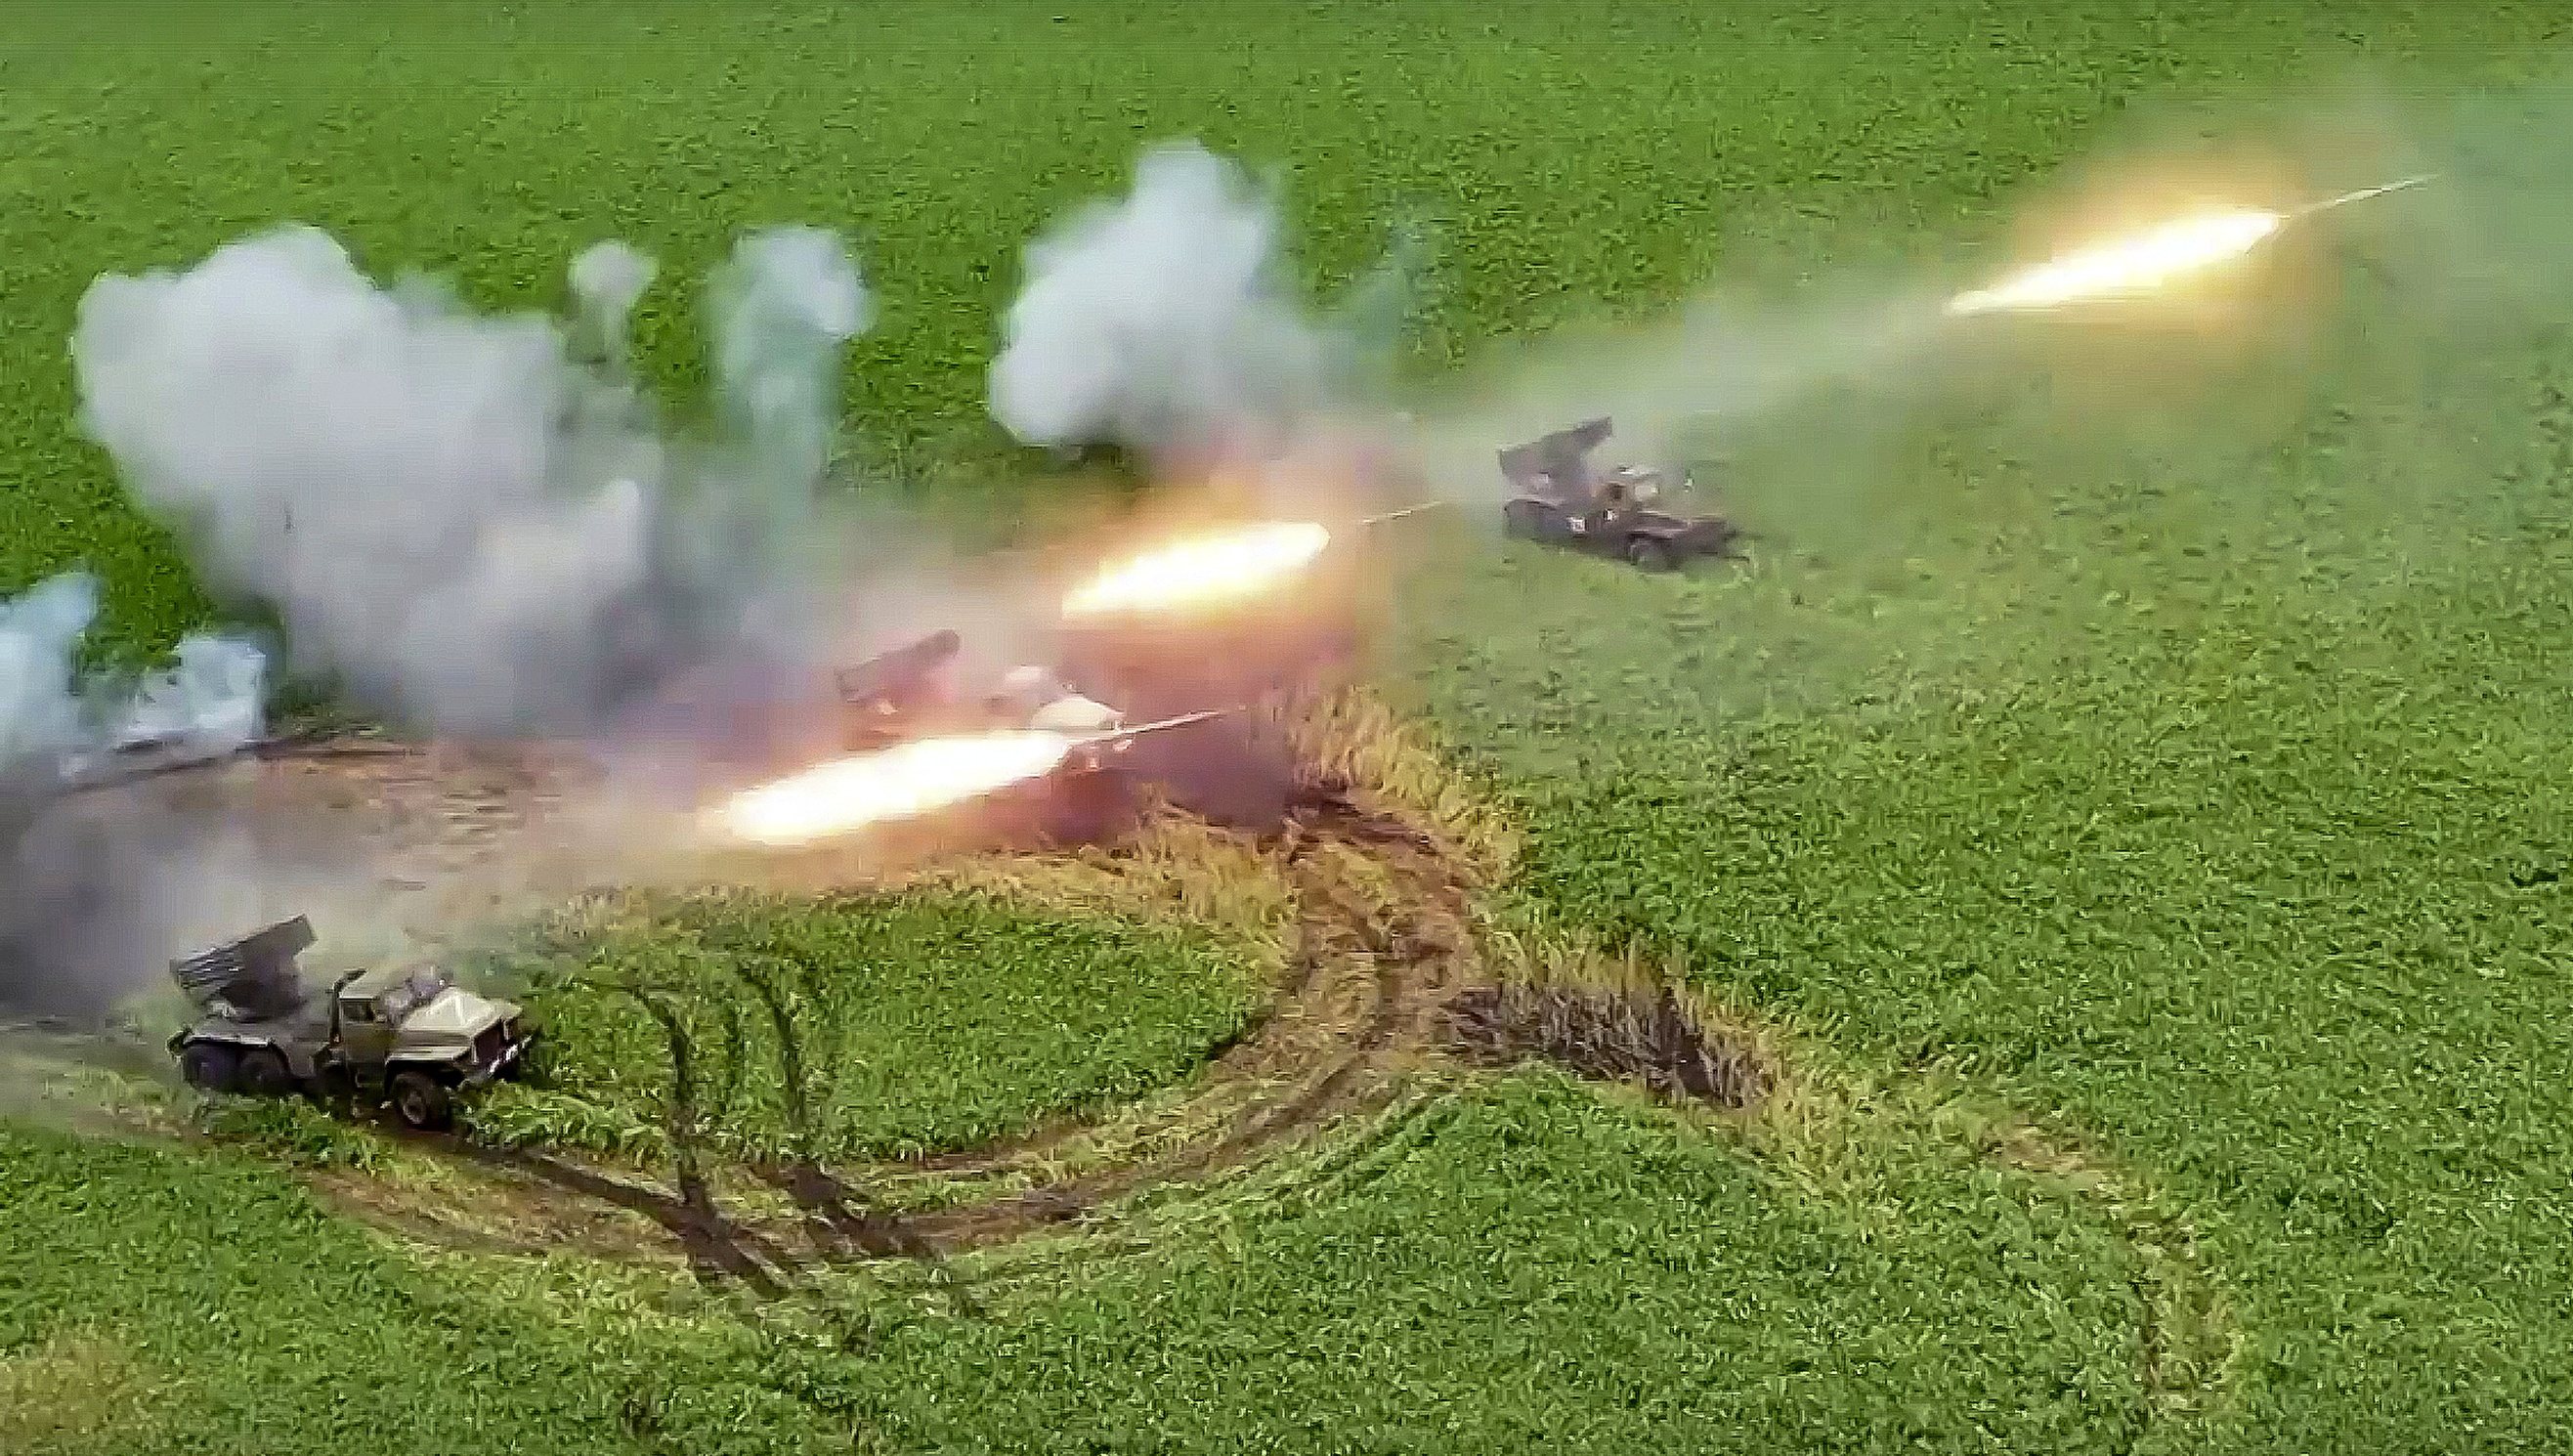 Los lanzacohetes Grad del ejército ruso disparan cohetes contra las tropas ucranianas.